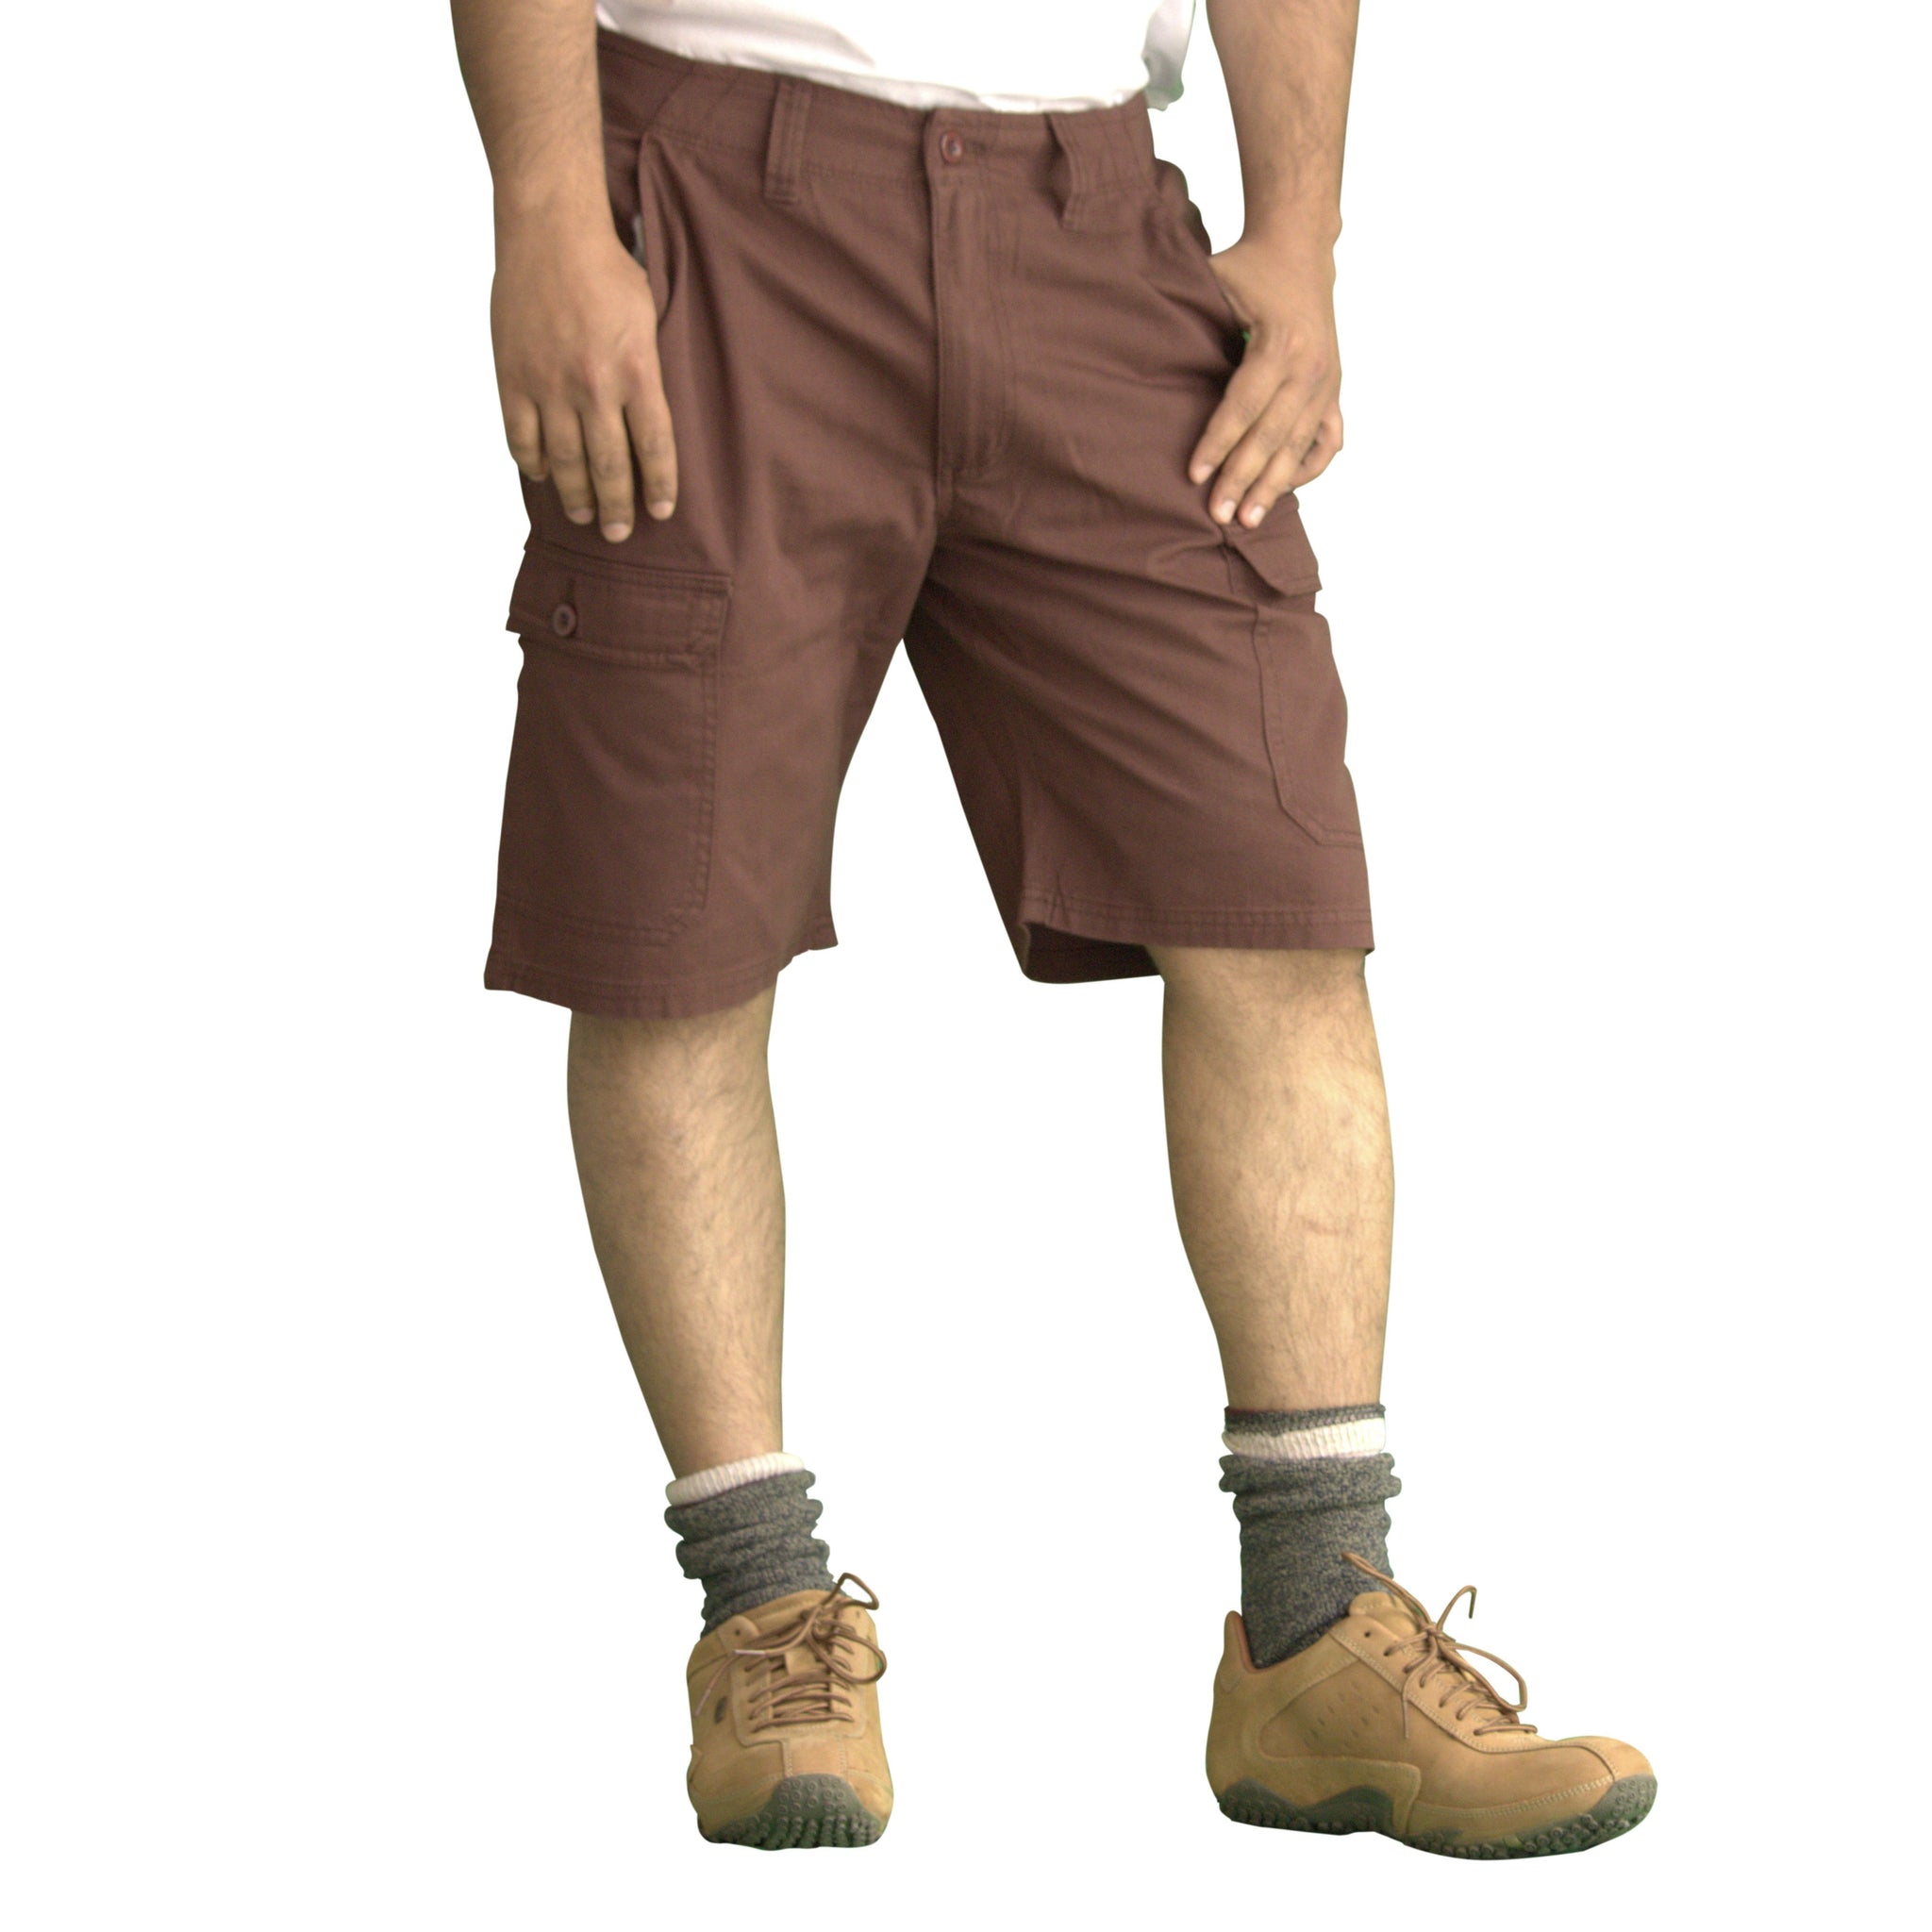 Men's Classic Cargo Short Pants (Brown)